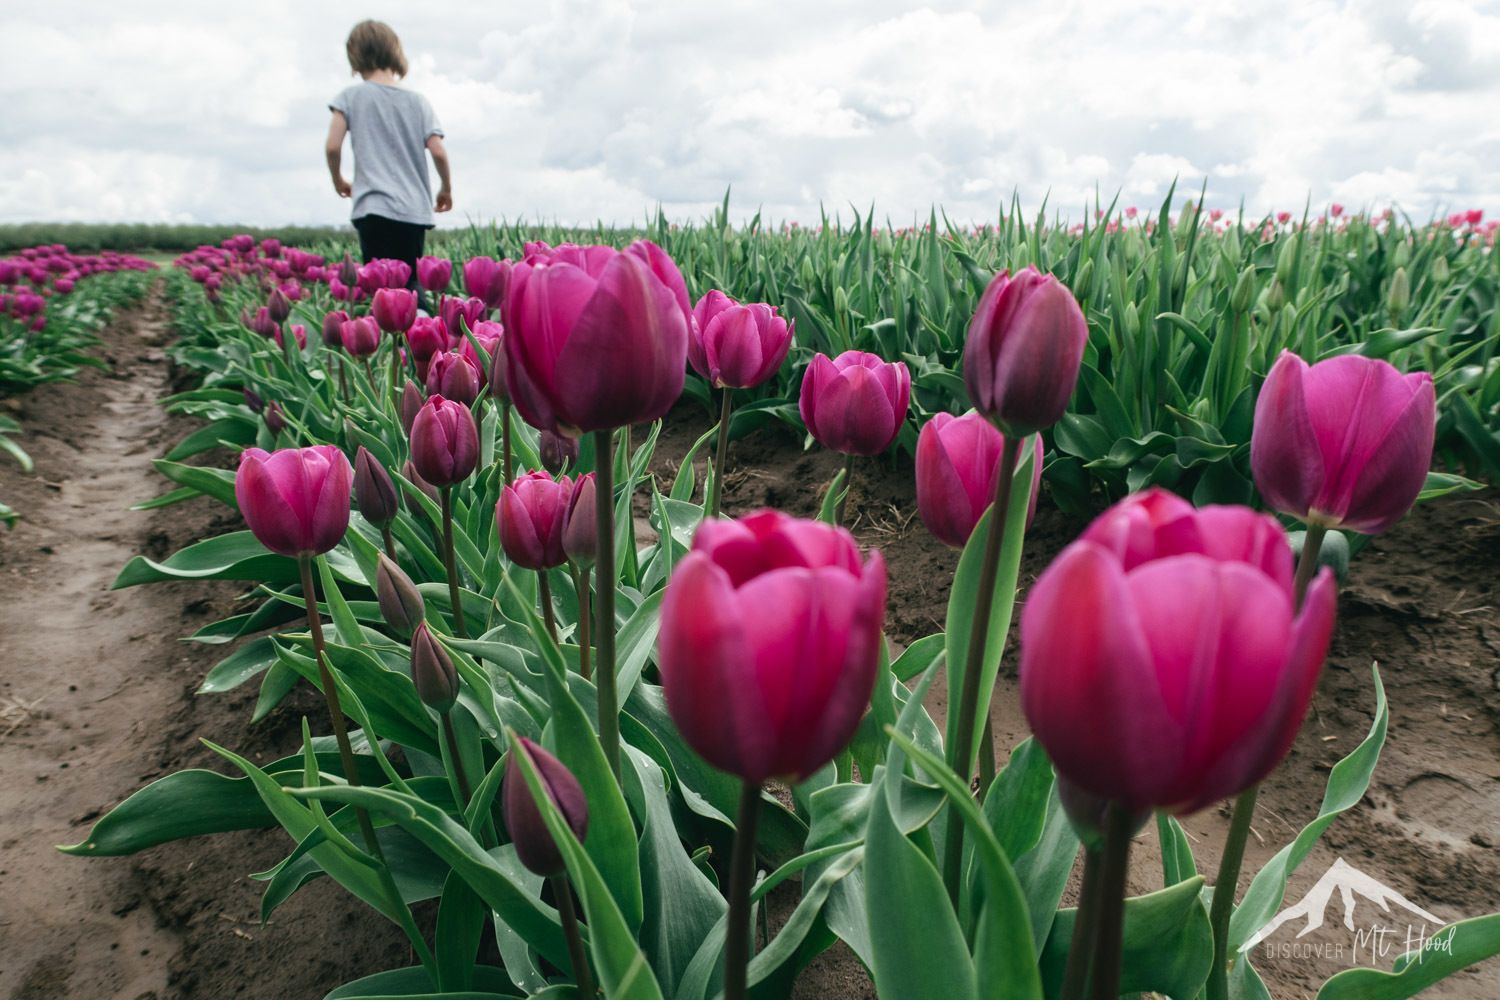 Young girl walking through tulip field